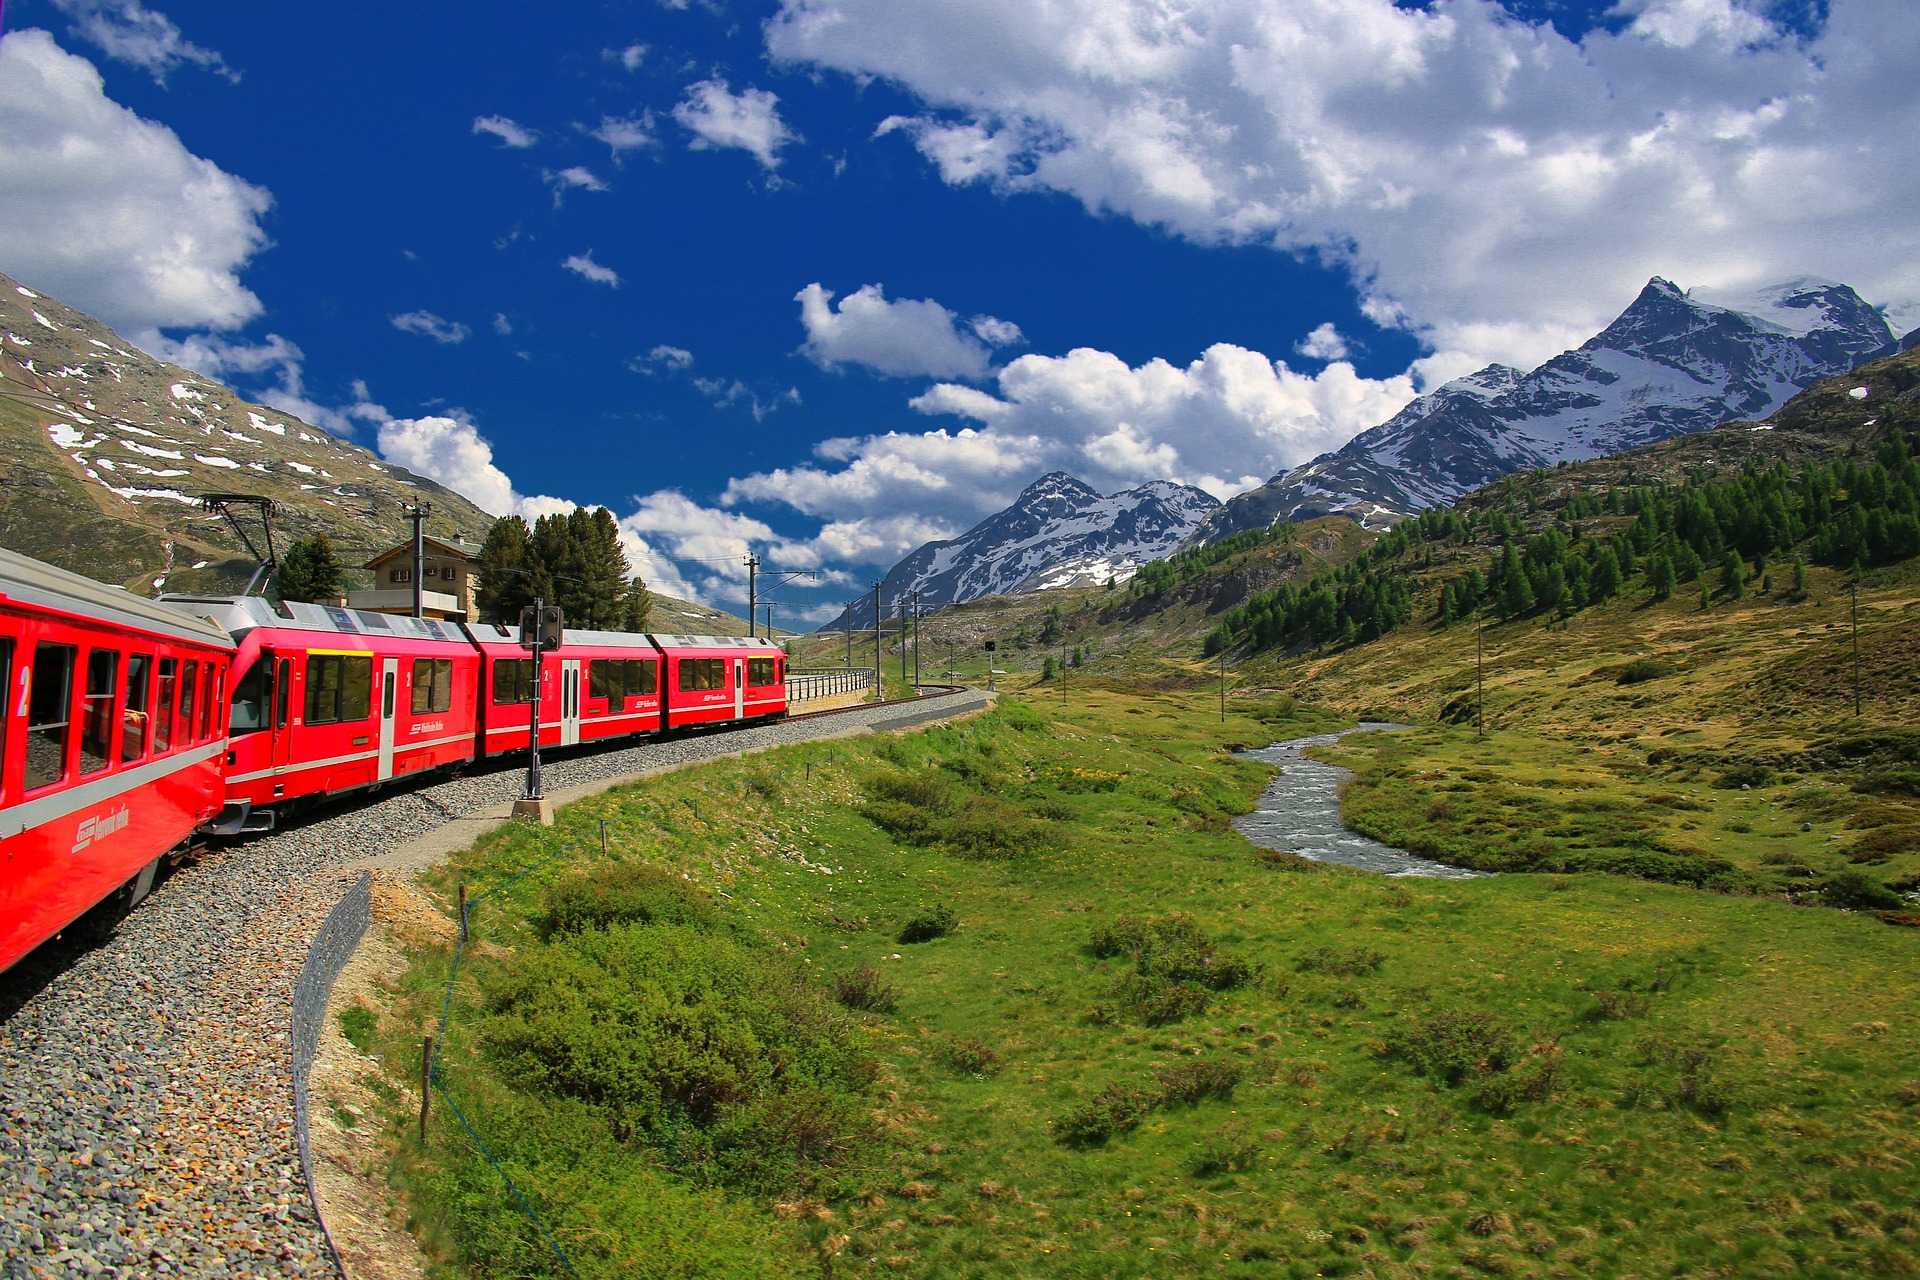 Жд тур на поезде. Ледниковый экспресс Швейцария. Железня дорога Швейцарии. Поезд Бернина экспресс. Поезд в Альпах Швейцария.